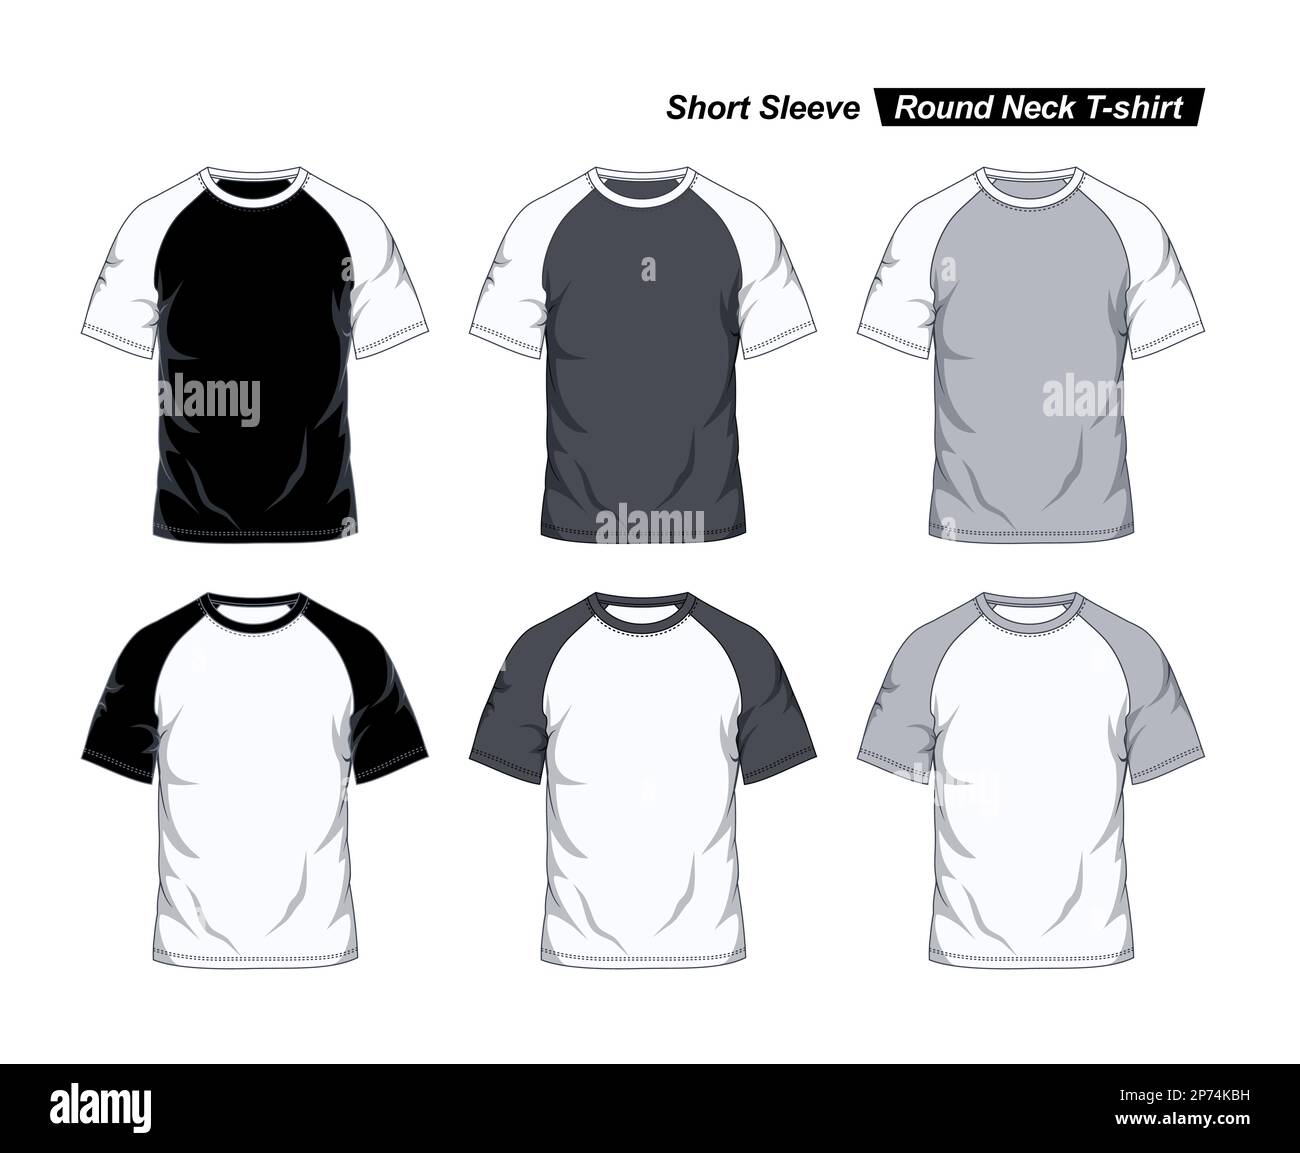 T-shirt a maniche corte con maniche arrotondate, modello raglan, vista frontale, bianco e nero. Illustrazione vettoriale Illustrazione Vettoriale